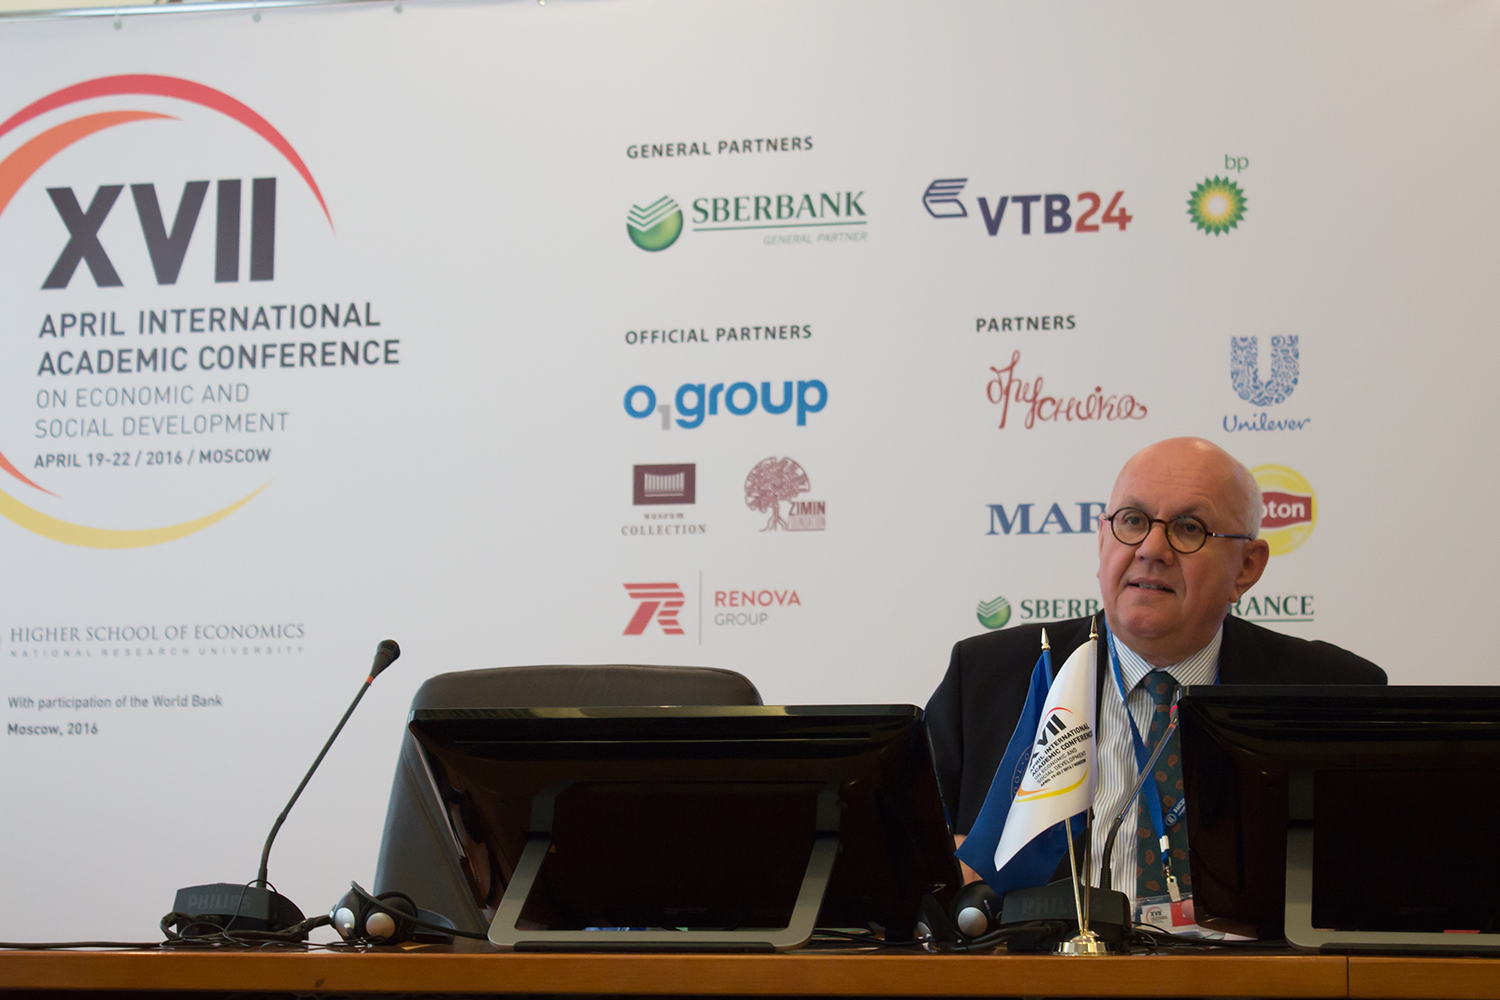 Почетная лекция президента DFG Петера Штрошнайдера на Апрельской конференции ВШЭ. Москва, апрель 2016